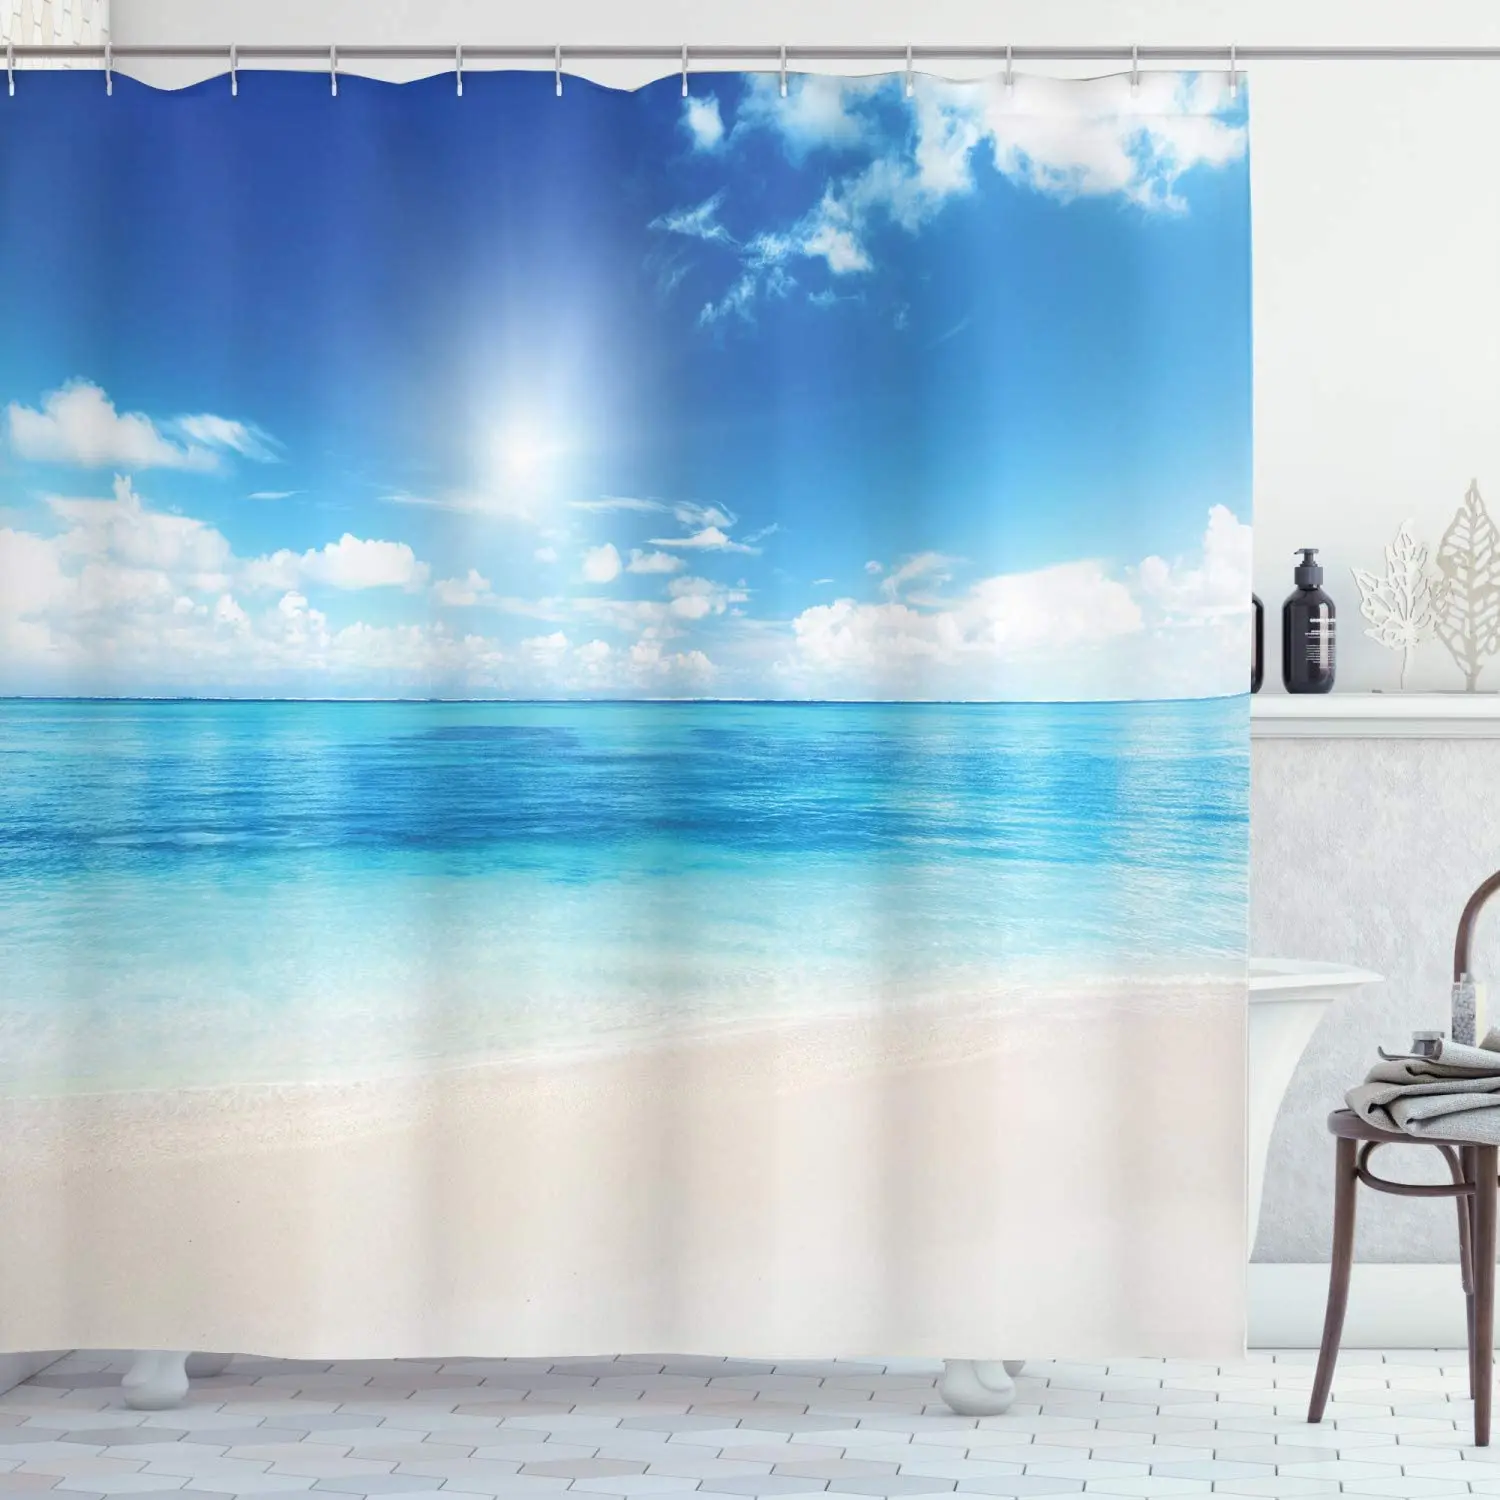 

Занавеска для душа с Приморским и морским пейзажем, тканевая декоративная штора с крючками для ванной комнаты, для пляжа, воды, пальмы, Гавайского ландшафта, синяя, зеленая